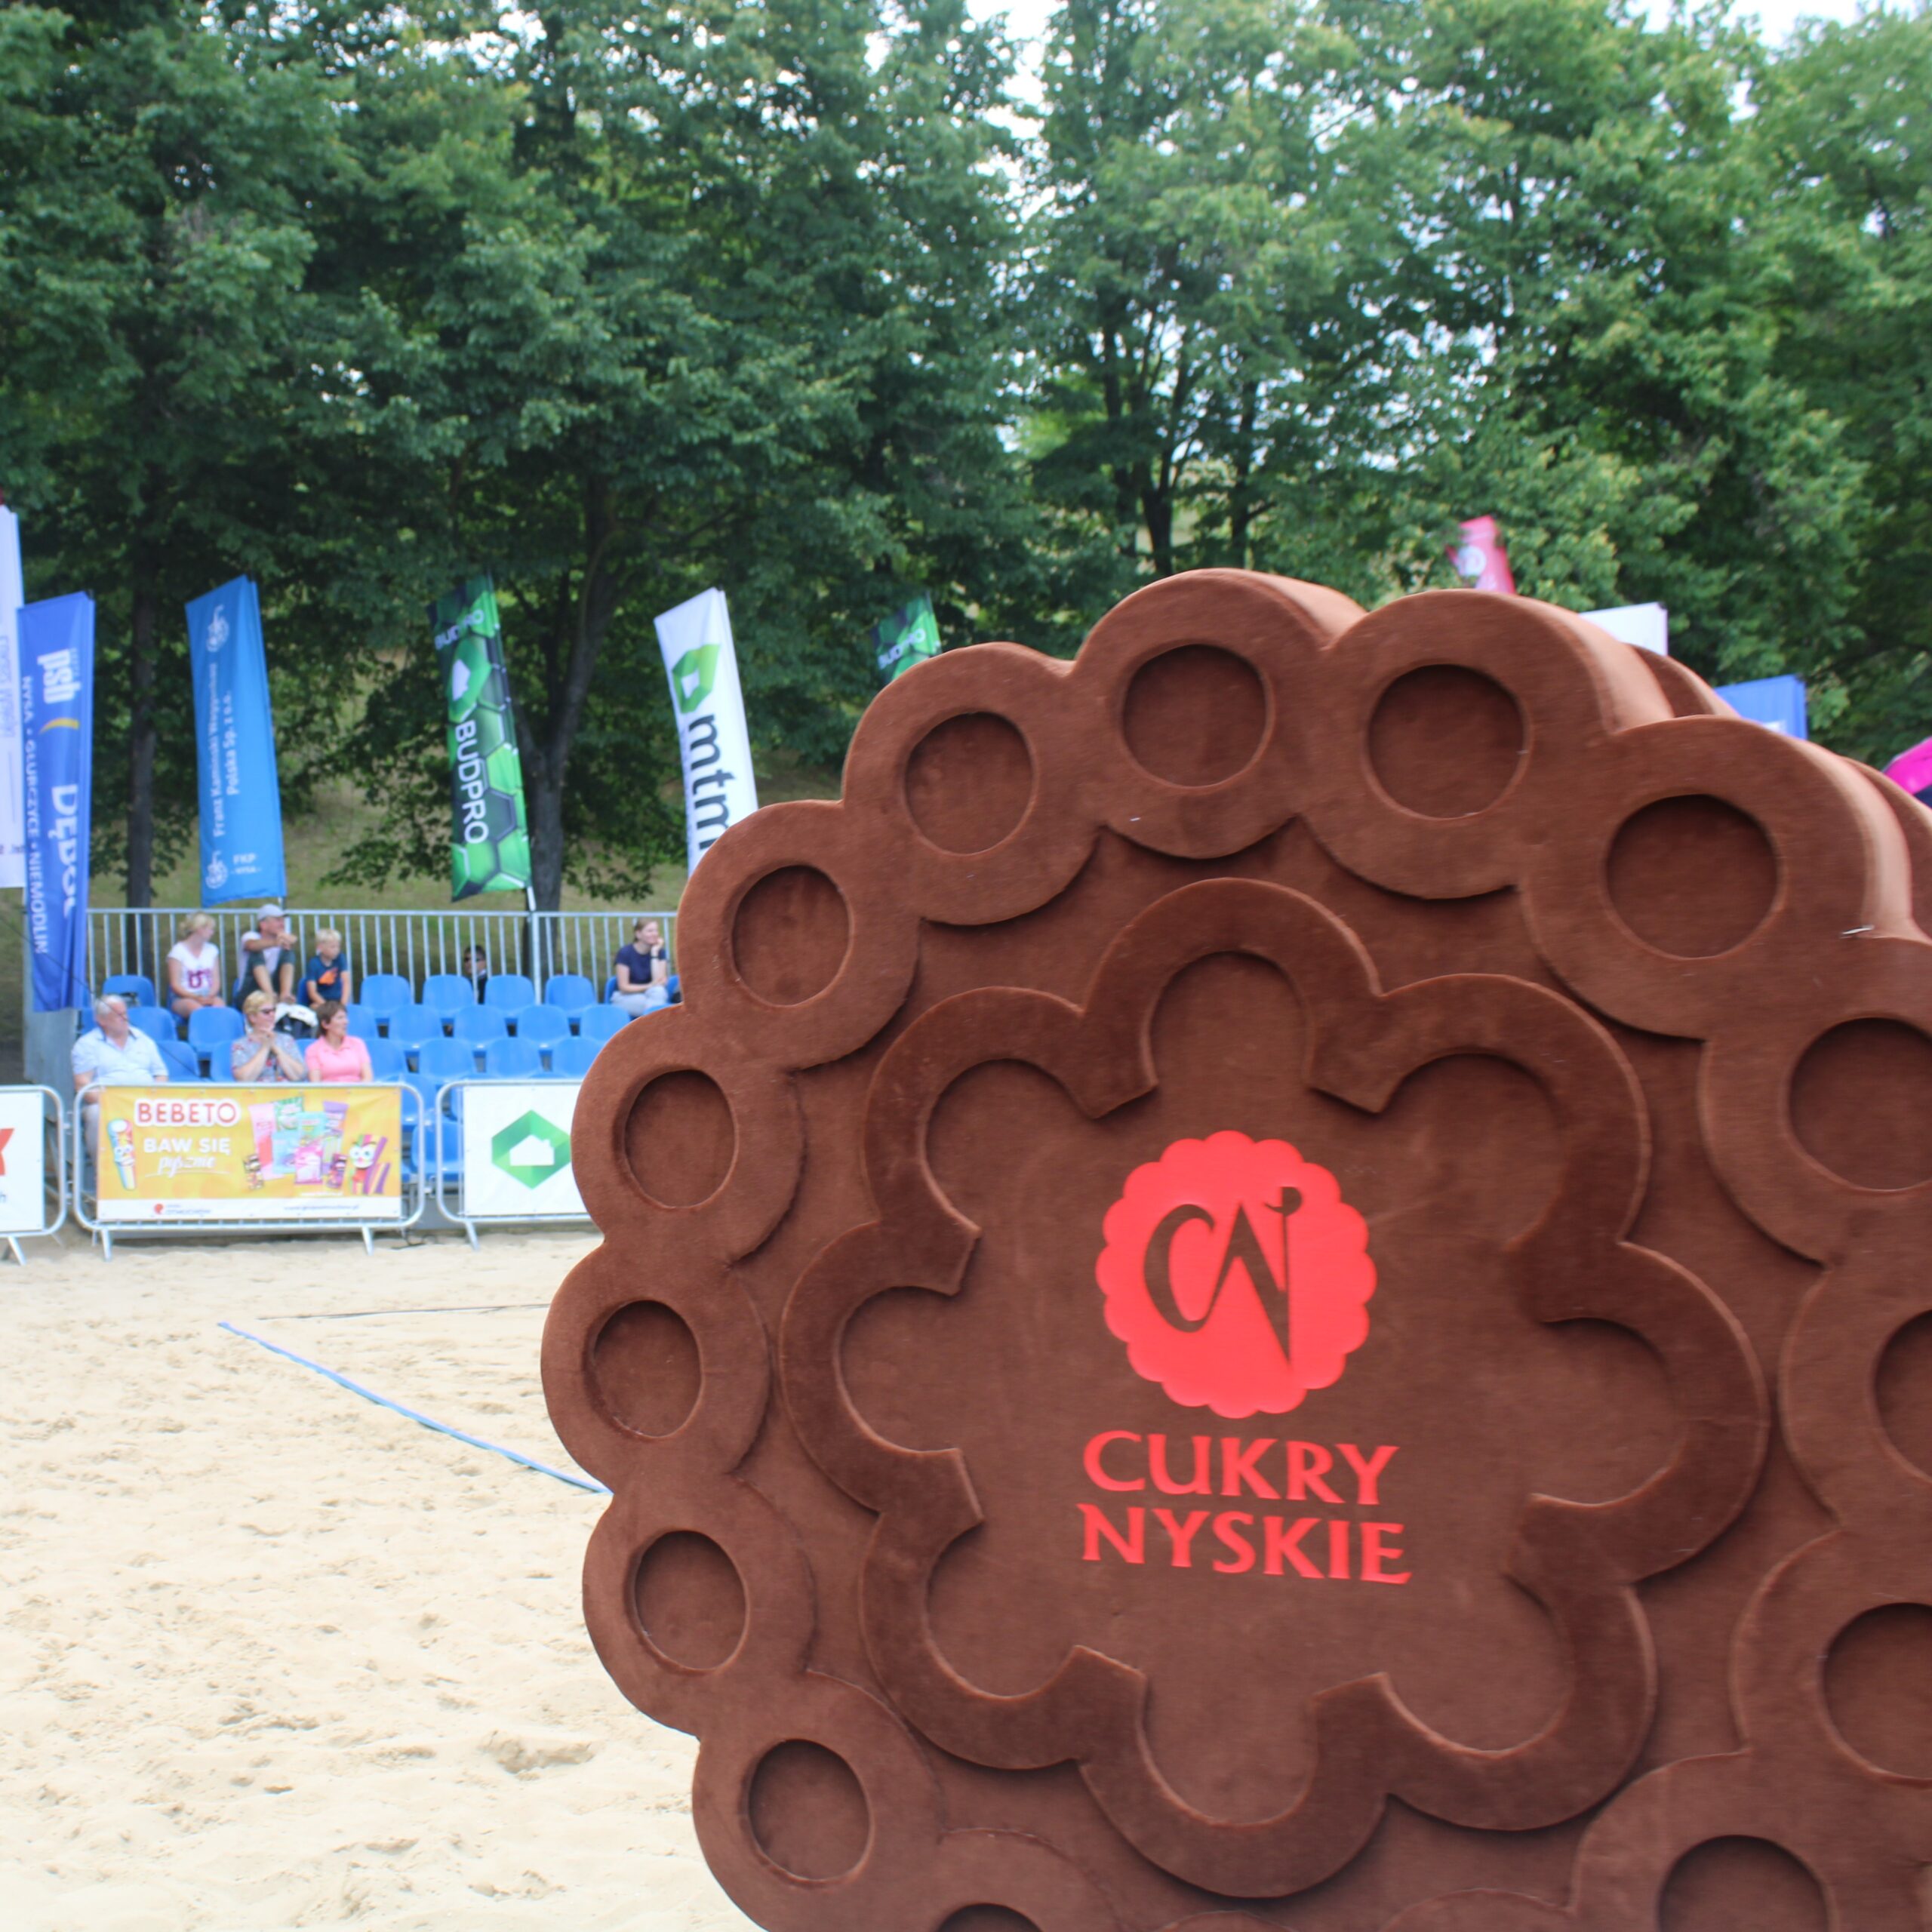 Cukry Nyskie sponsor siatkówki plażowej Nysa